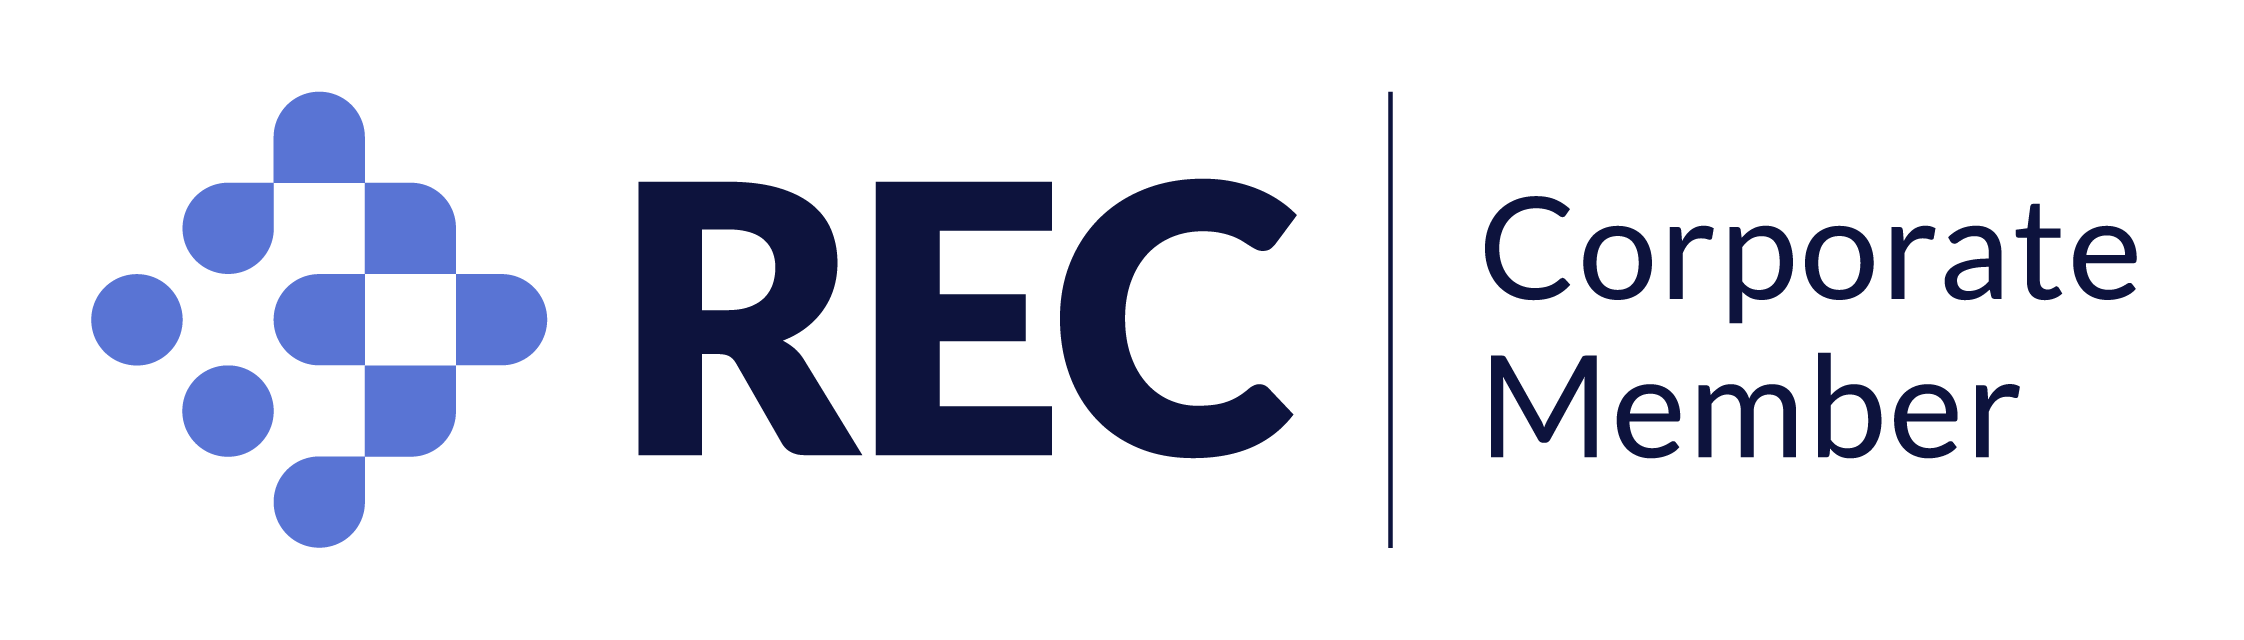 Rec corporate member logo